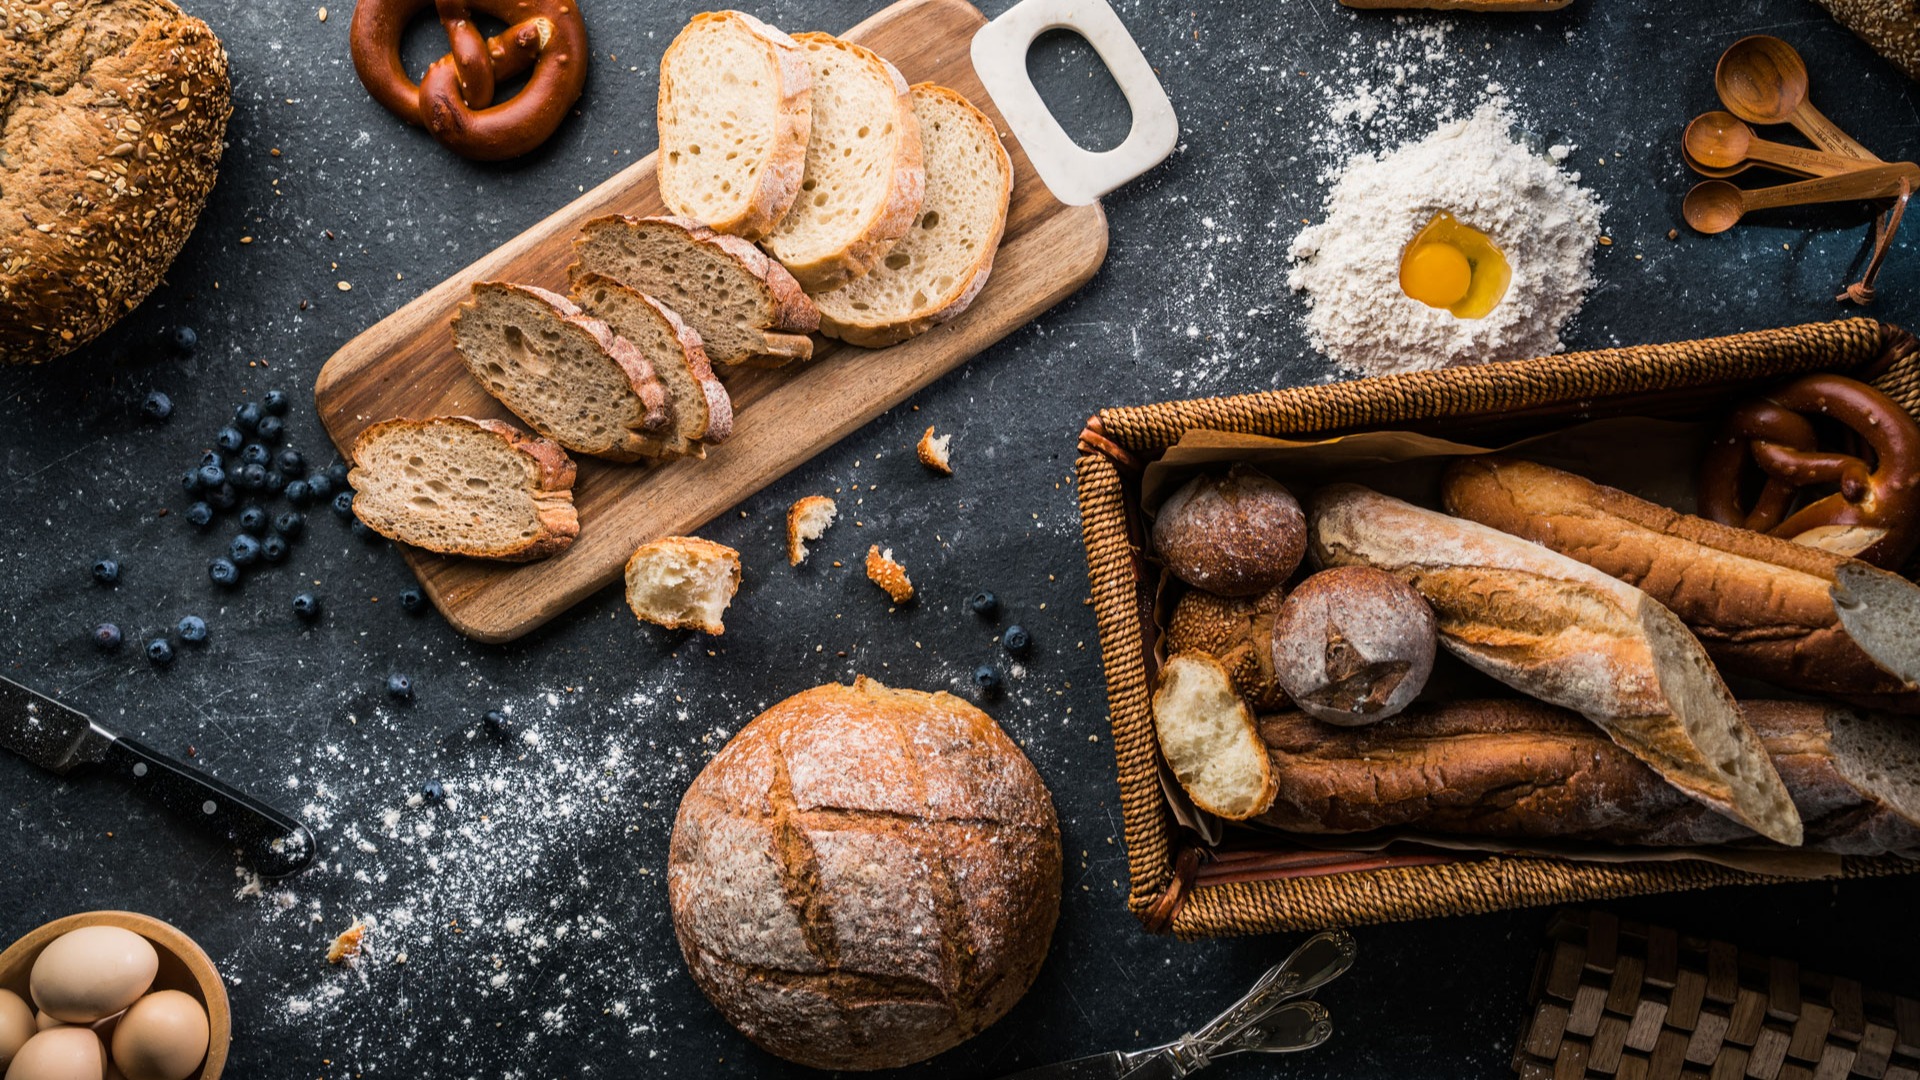 Complet, blanc, seigle ou levain : tout savoir sur le pain - Elle à Table